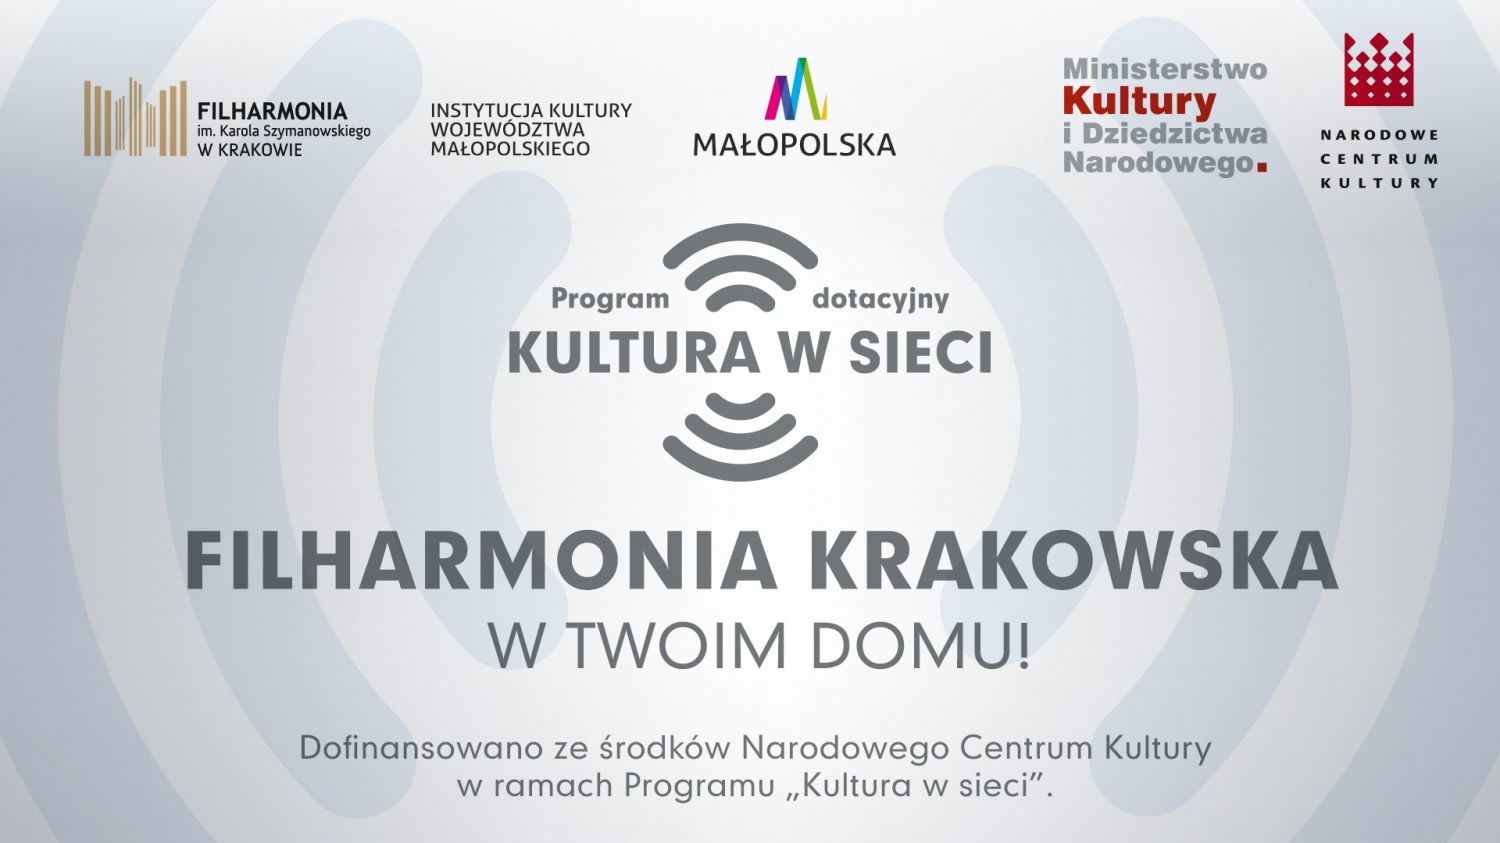 Filharmonia Krakowska w Twoim domu